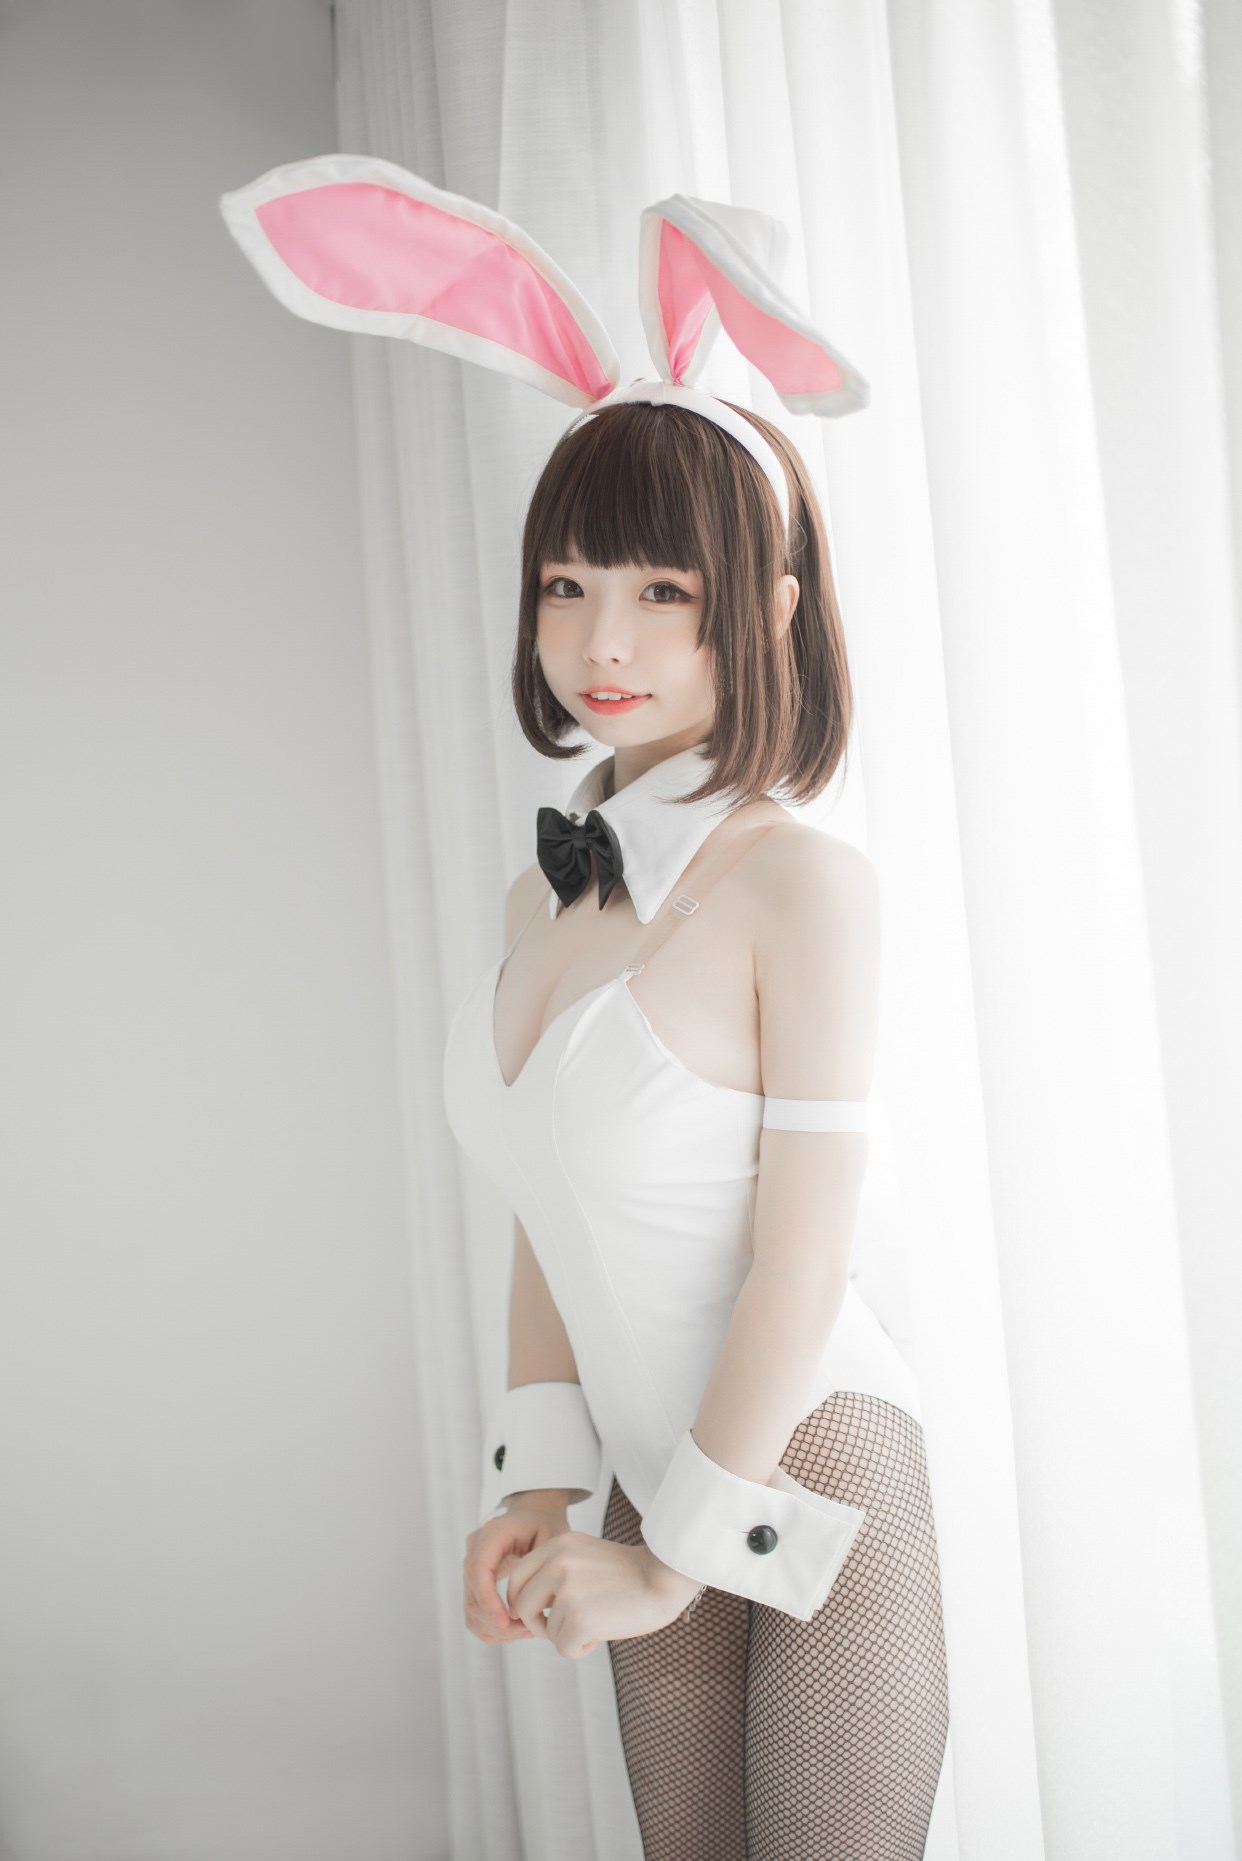 【兔玩映画】兔女郎vol.22-萝莉 兔玩映画 第9张